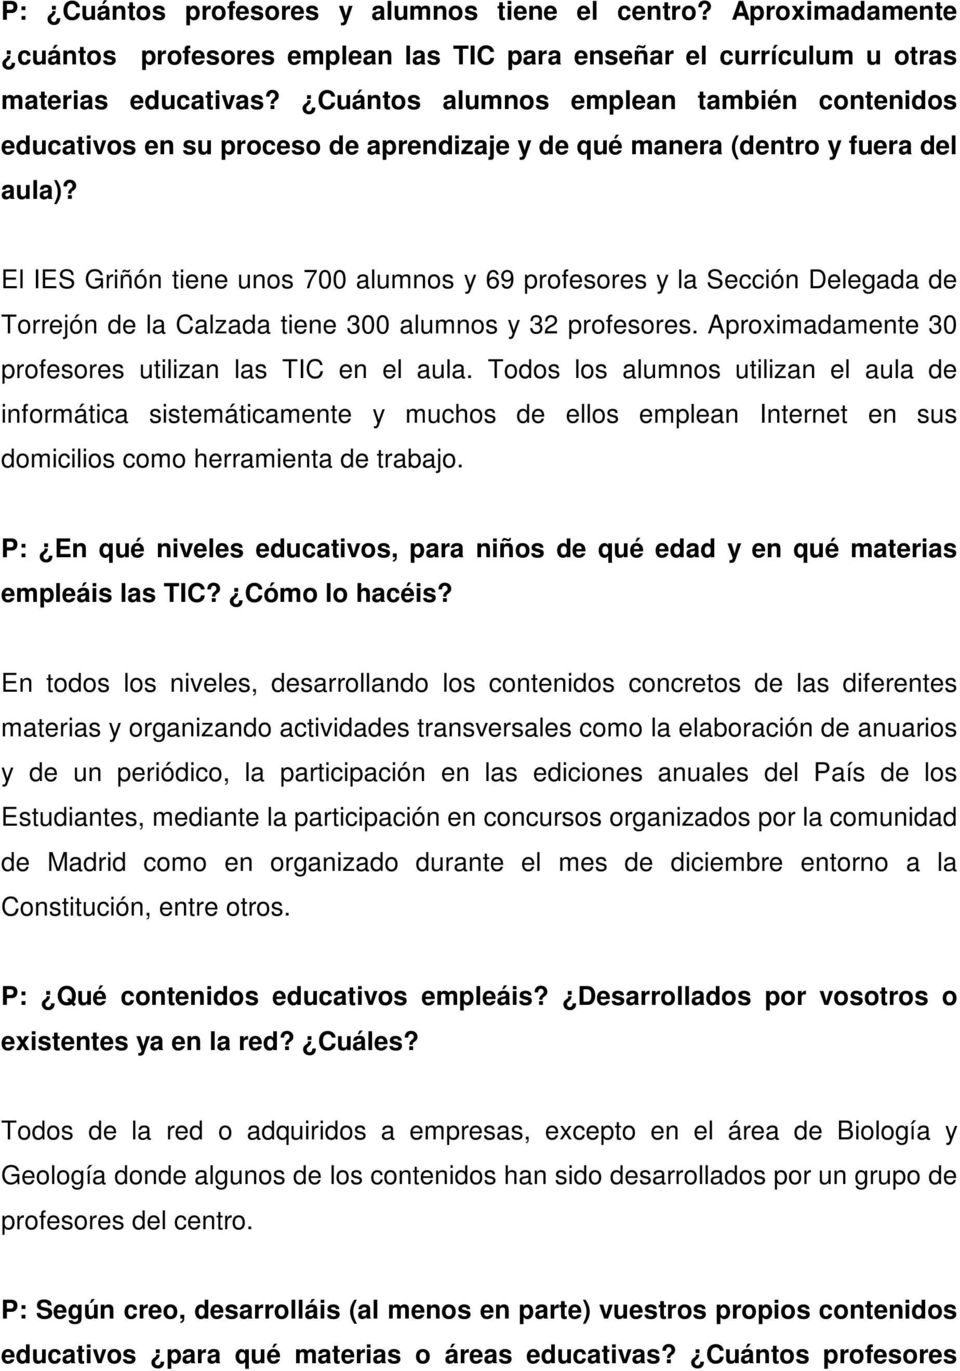 El IES Griñón tiene unos 700 alumnos y 69 profesores y la Sección Delegada de Torrejón de la Calzada tiene 300 alumnos y 32 profesores. Aproximadamente 30 profesores utilizan las TIC en el aula.